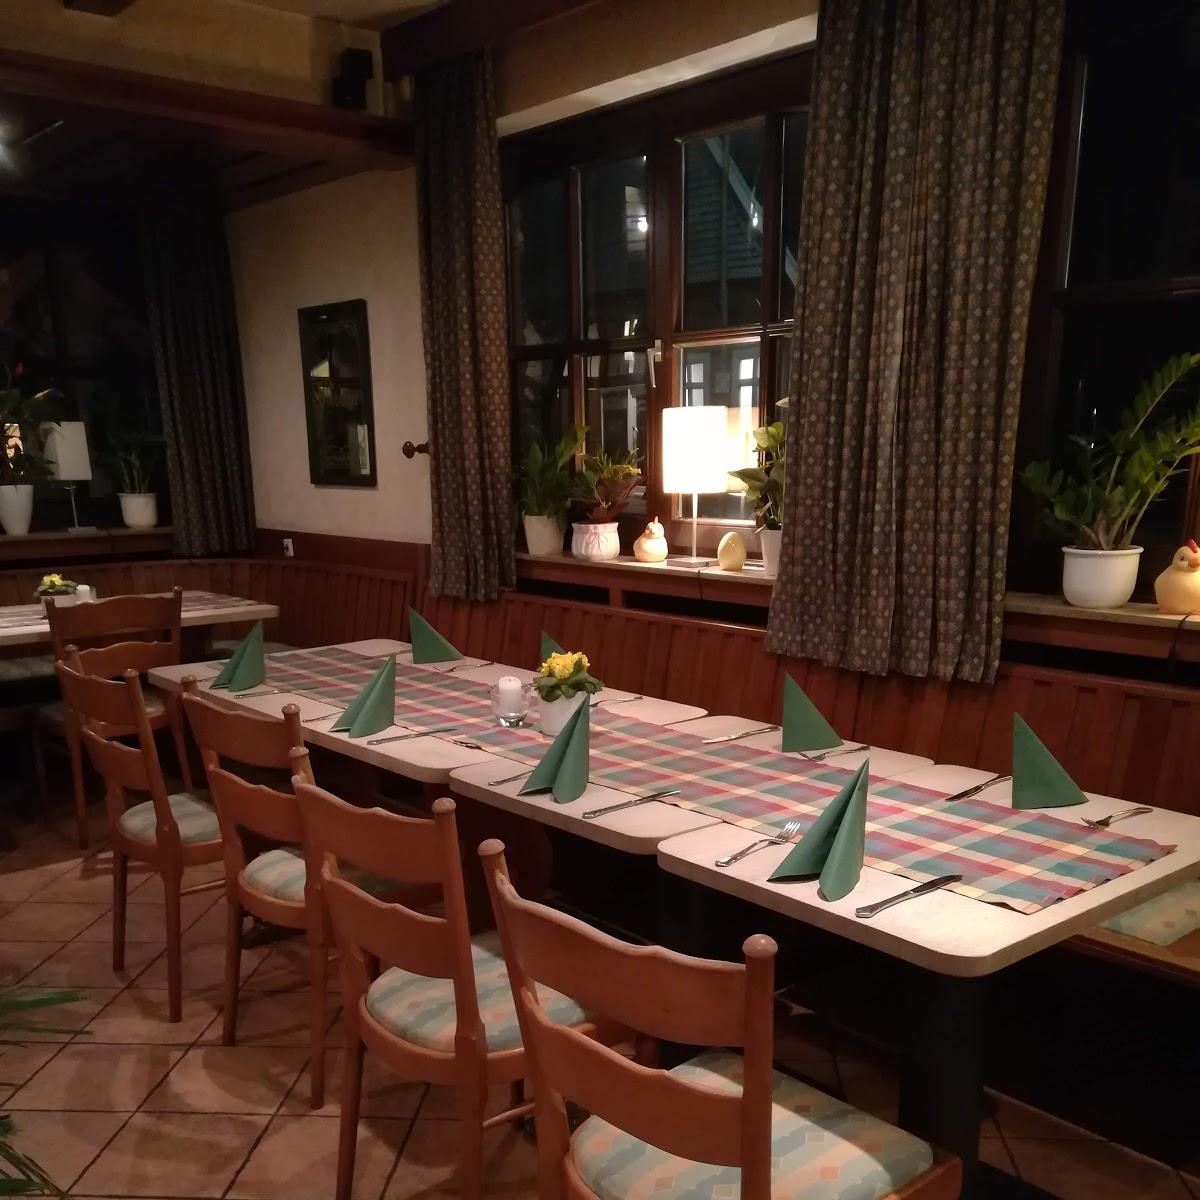 Restaurant "Franzkenpatt" in Ankum